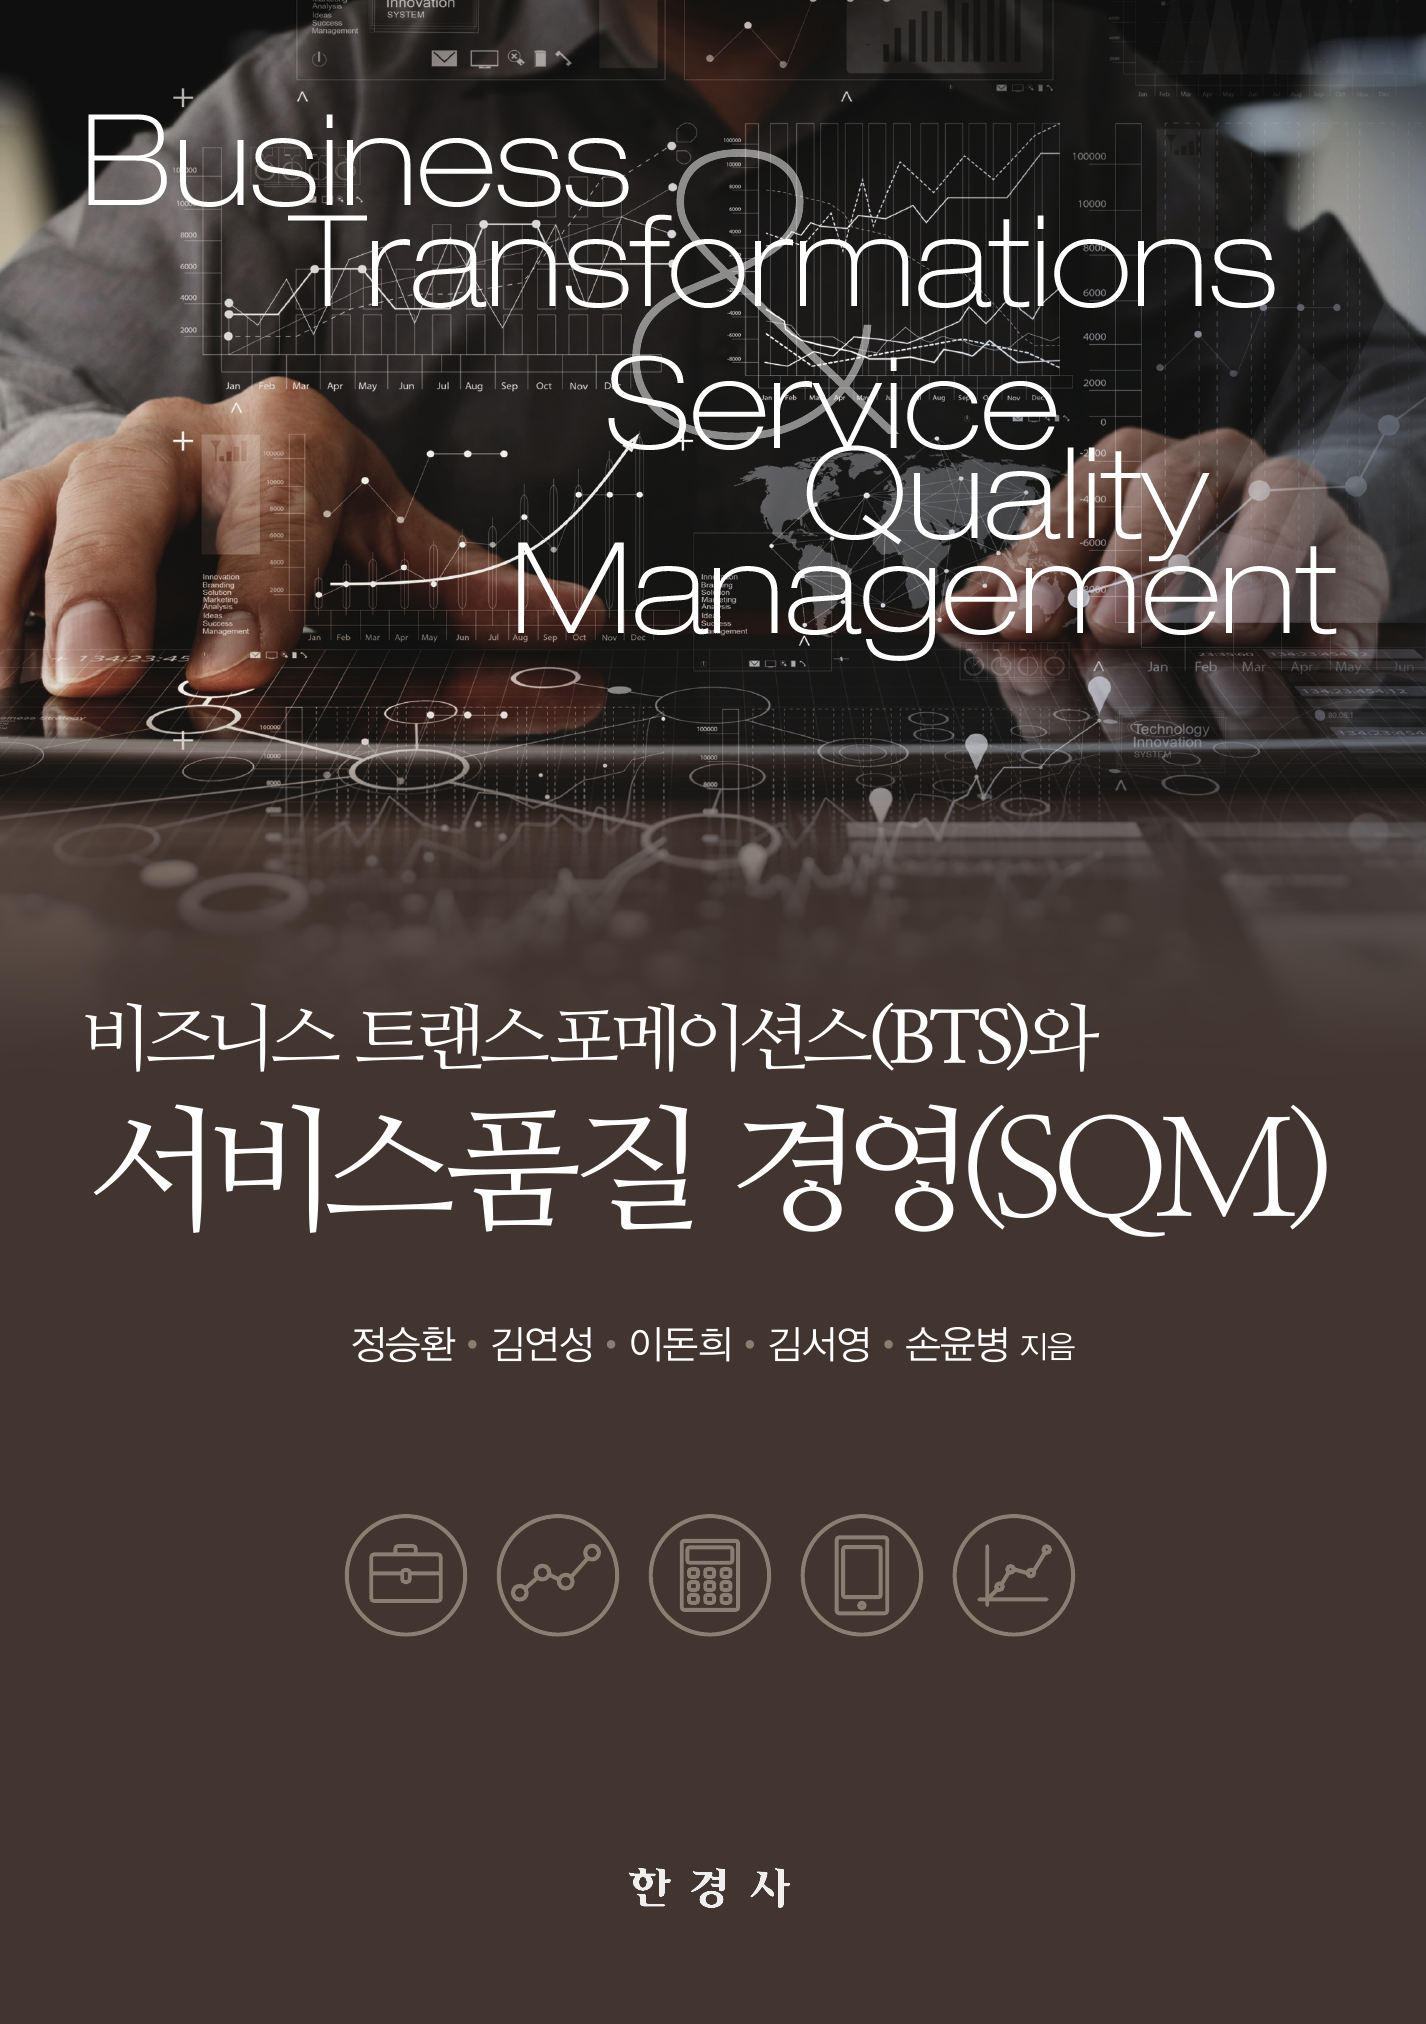 비즈니스 트랜스포메이션스와 서비스품질 경영(SQM)